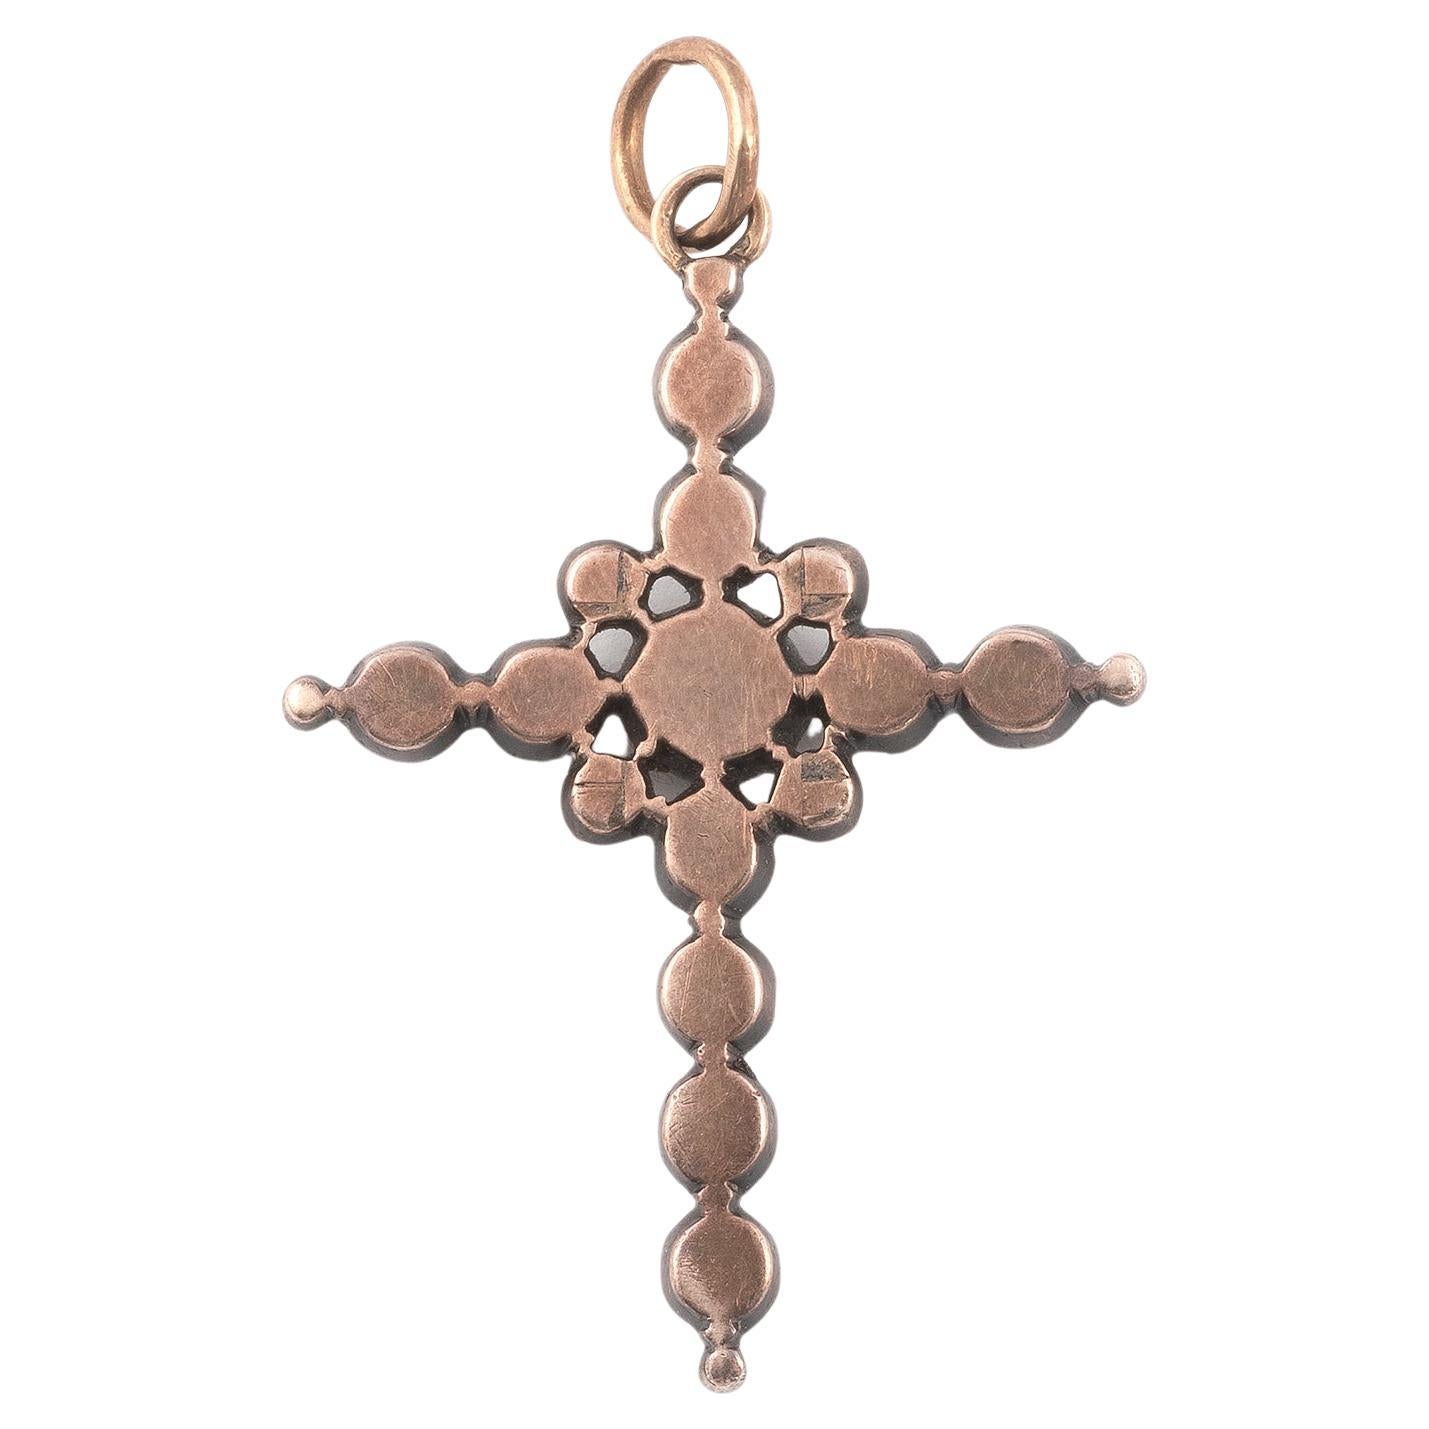 La croix latine, sertie de diamants taille rose dans des montures fermées en relief.
Montés en argent et or, longueurs : pendentif 3,7cm